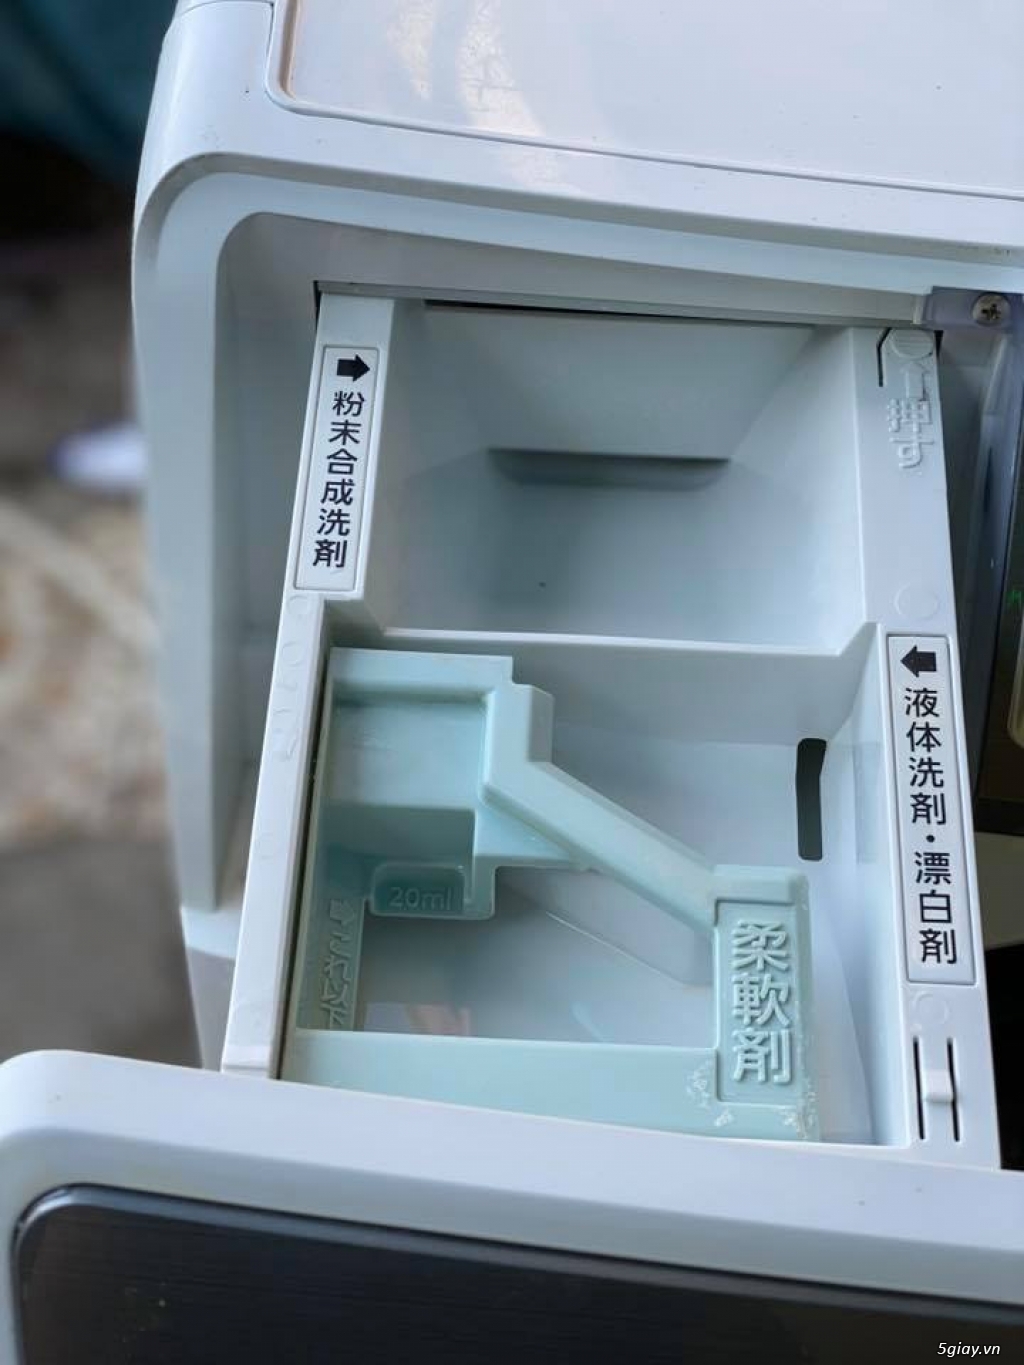 4 tiện ích của máy giặt 7kg nội địa NhậtPanasonic NA-VH310 (date 2014) - 6